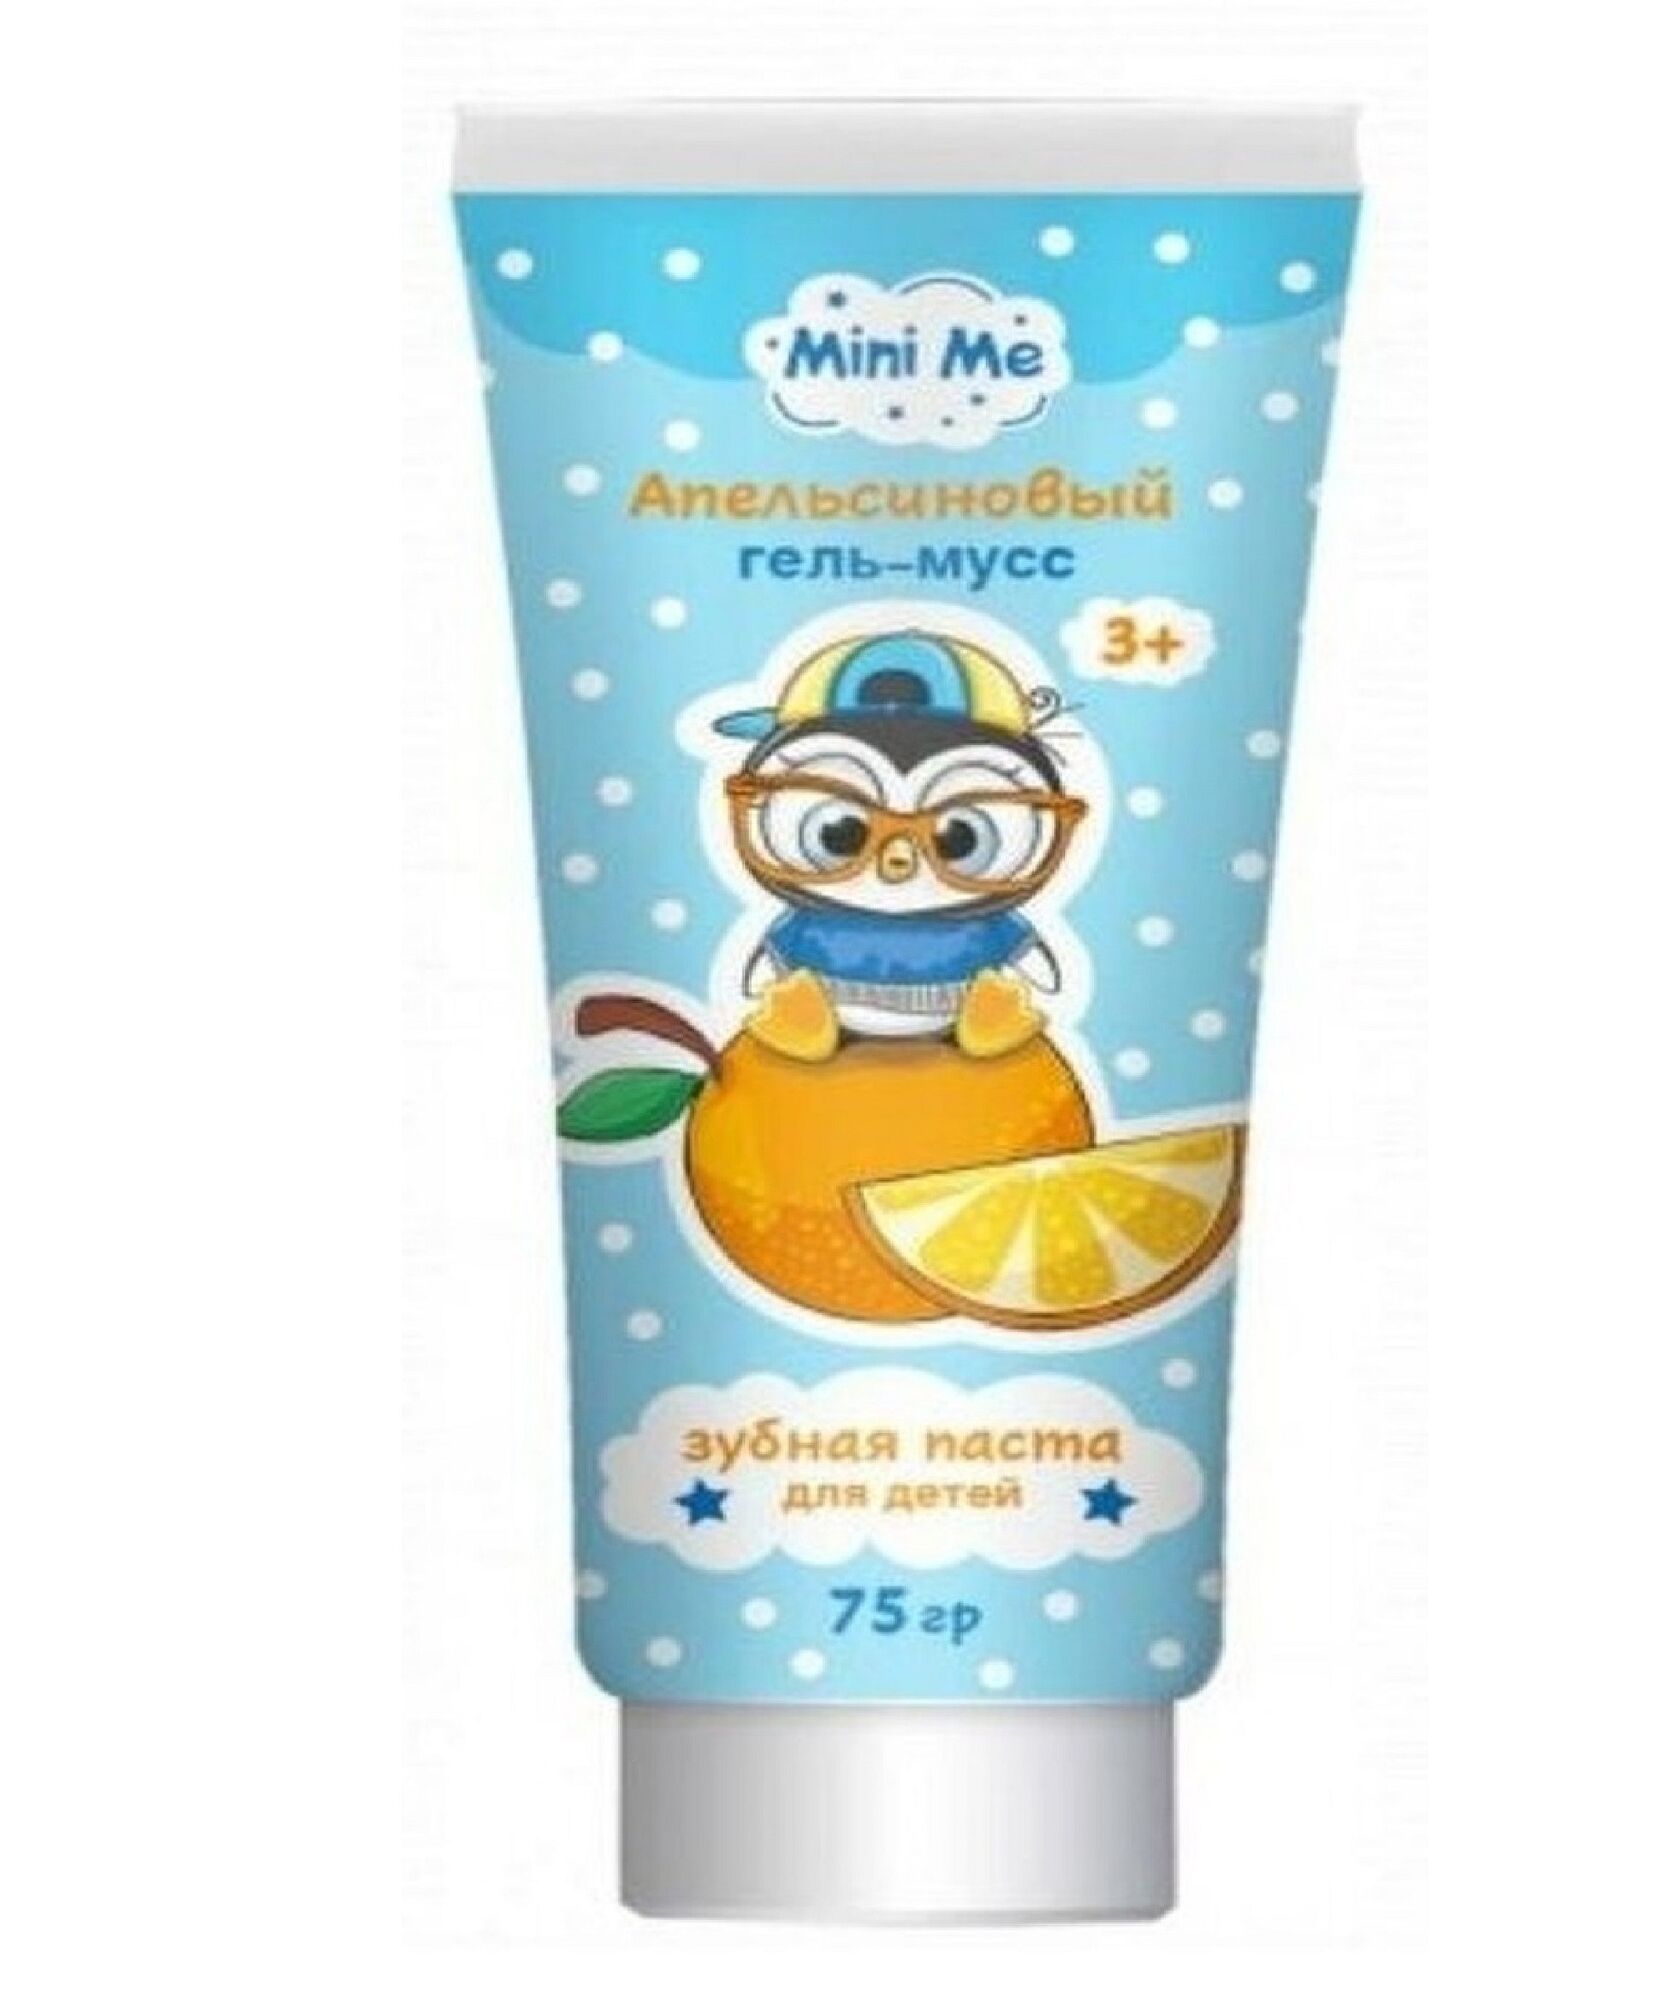 Зубная паста (Family Cosmetics) Mini Me 75 гр Апельсиновый гель-мусс детская